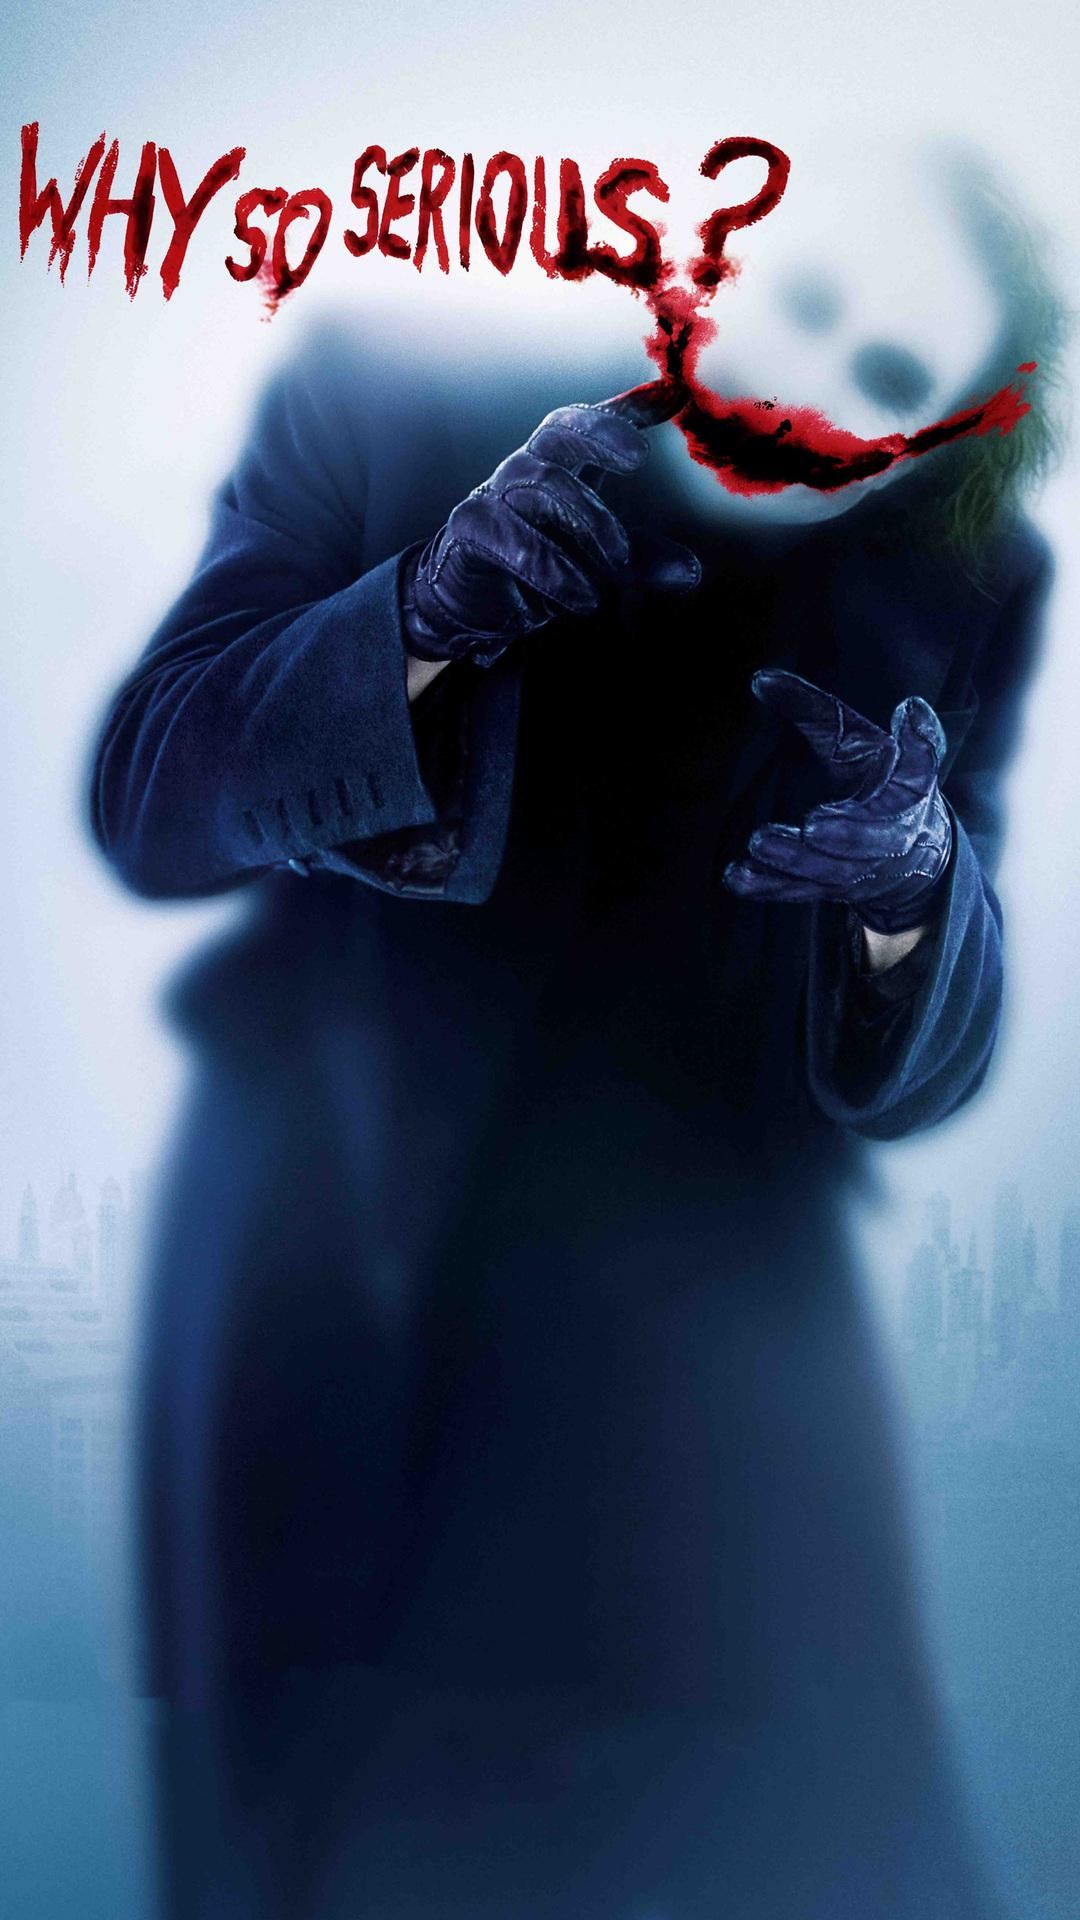 Joker iPhone Wallpaper for batman joker wallpaper iphone